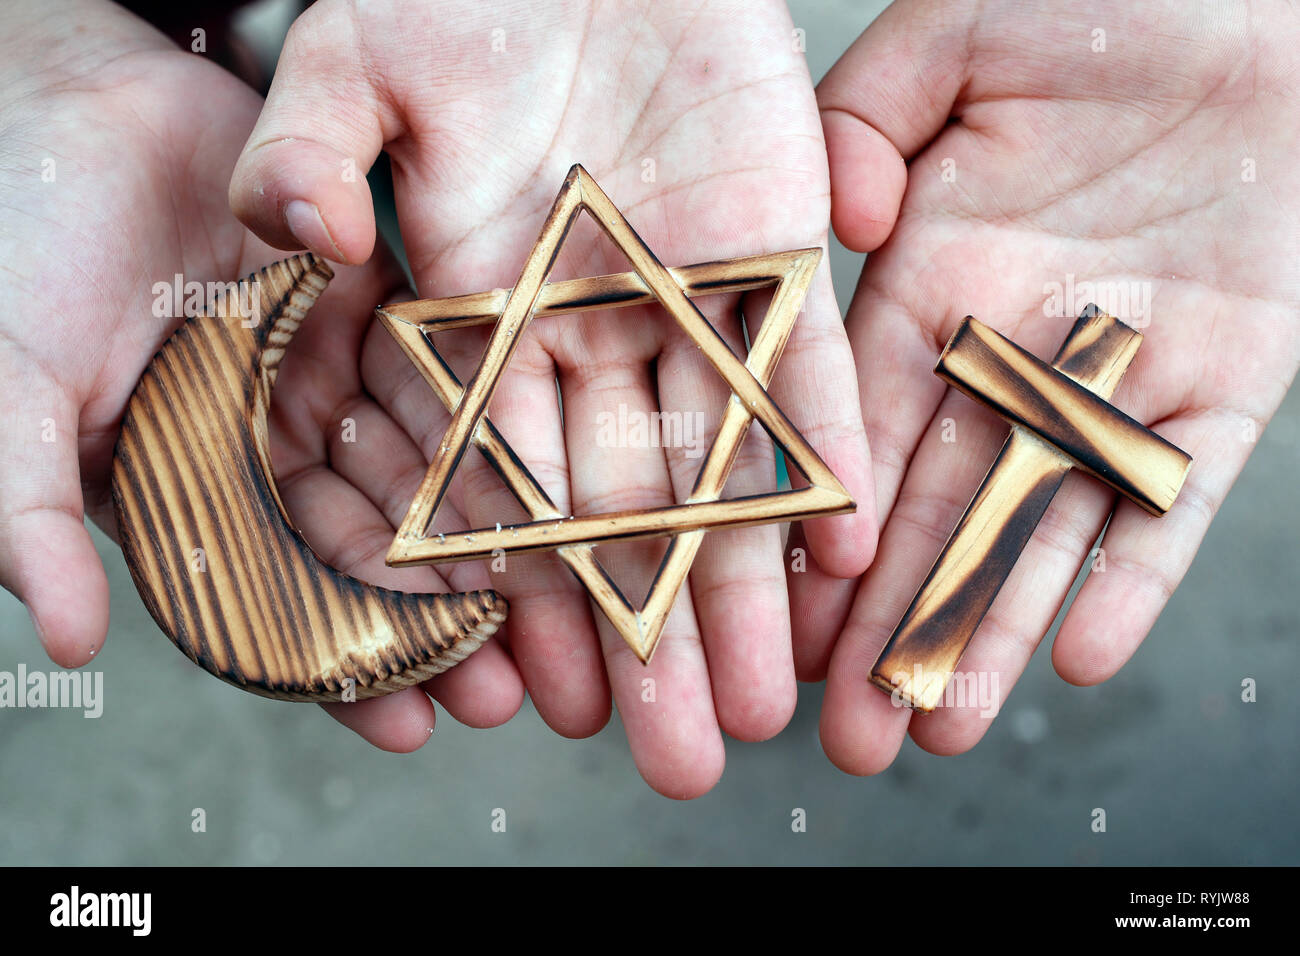 Il cristianesimo, islam ebraismo 3 religioni monoteiste. Stella ebraica, Croce e Crescent : interreligioso di simboli nelle mani. Foto Stock